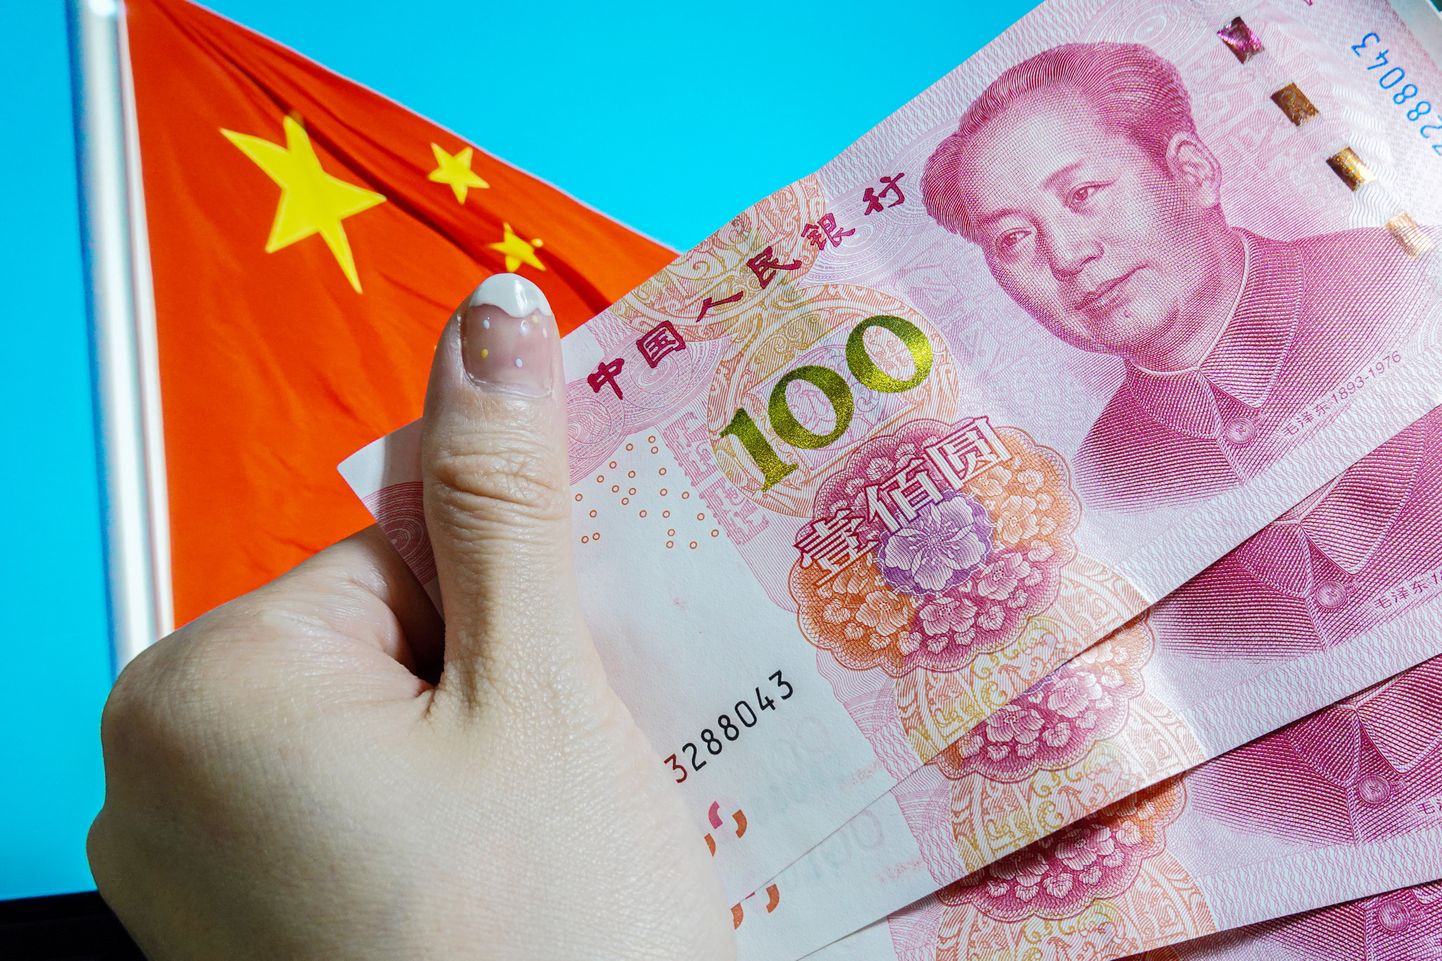 Hiina valuuta RMB.